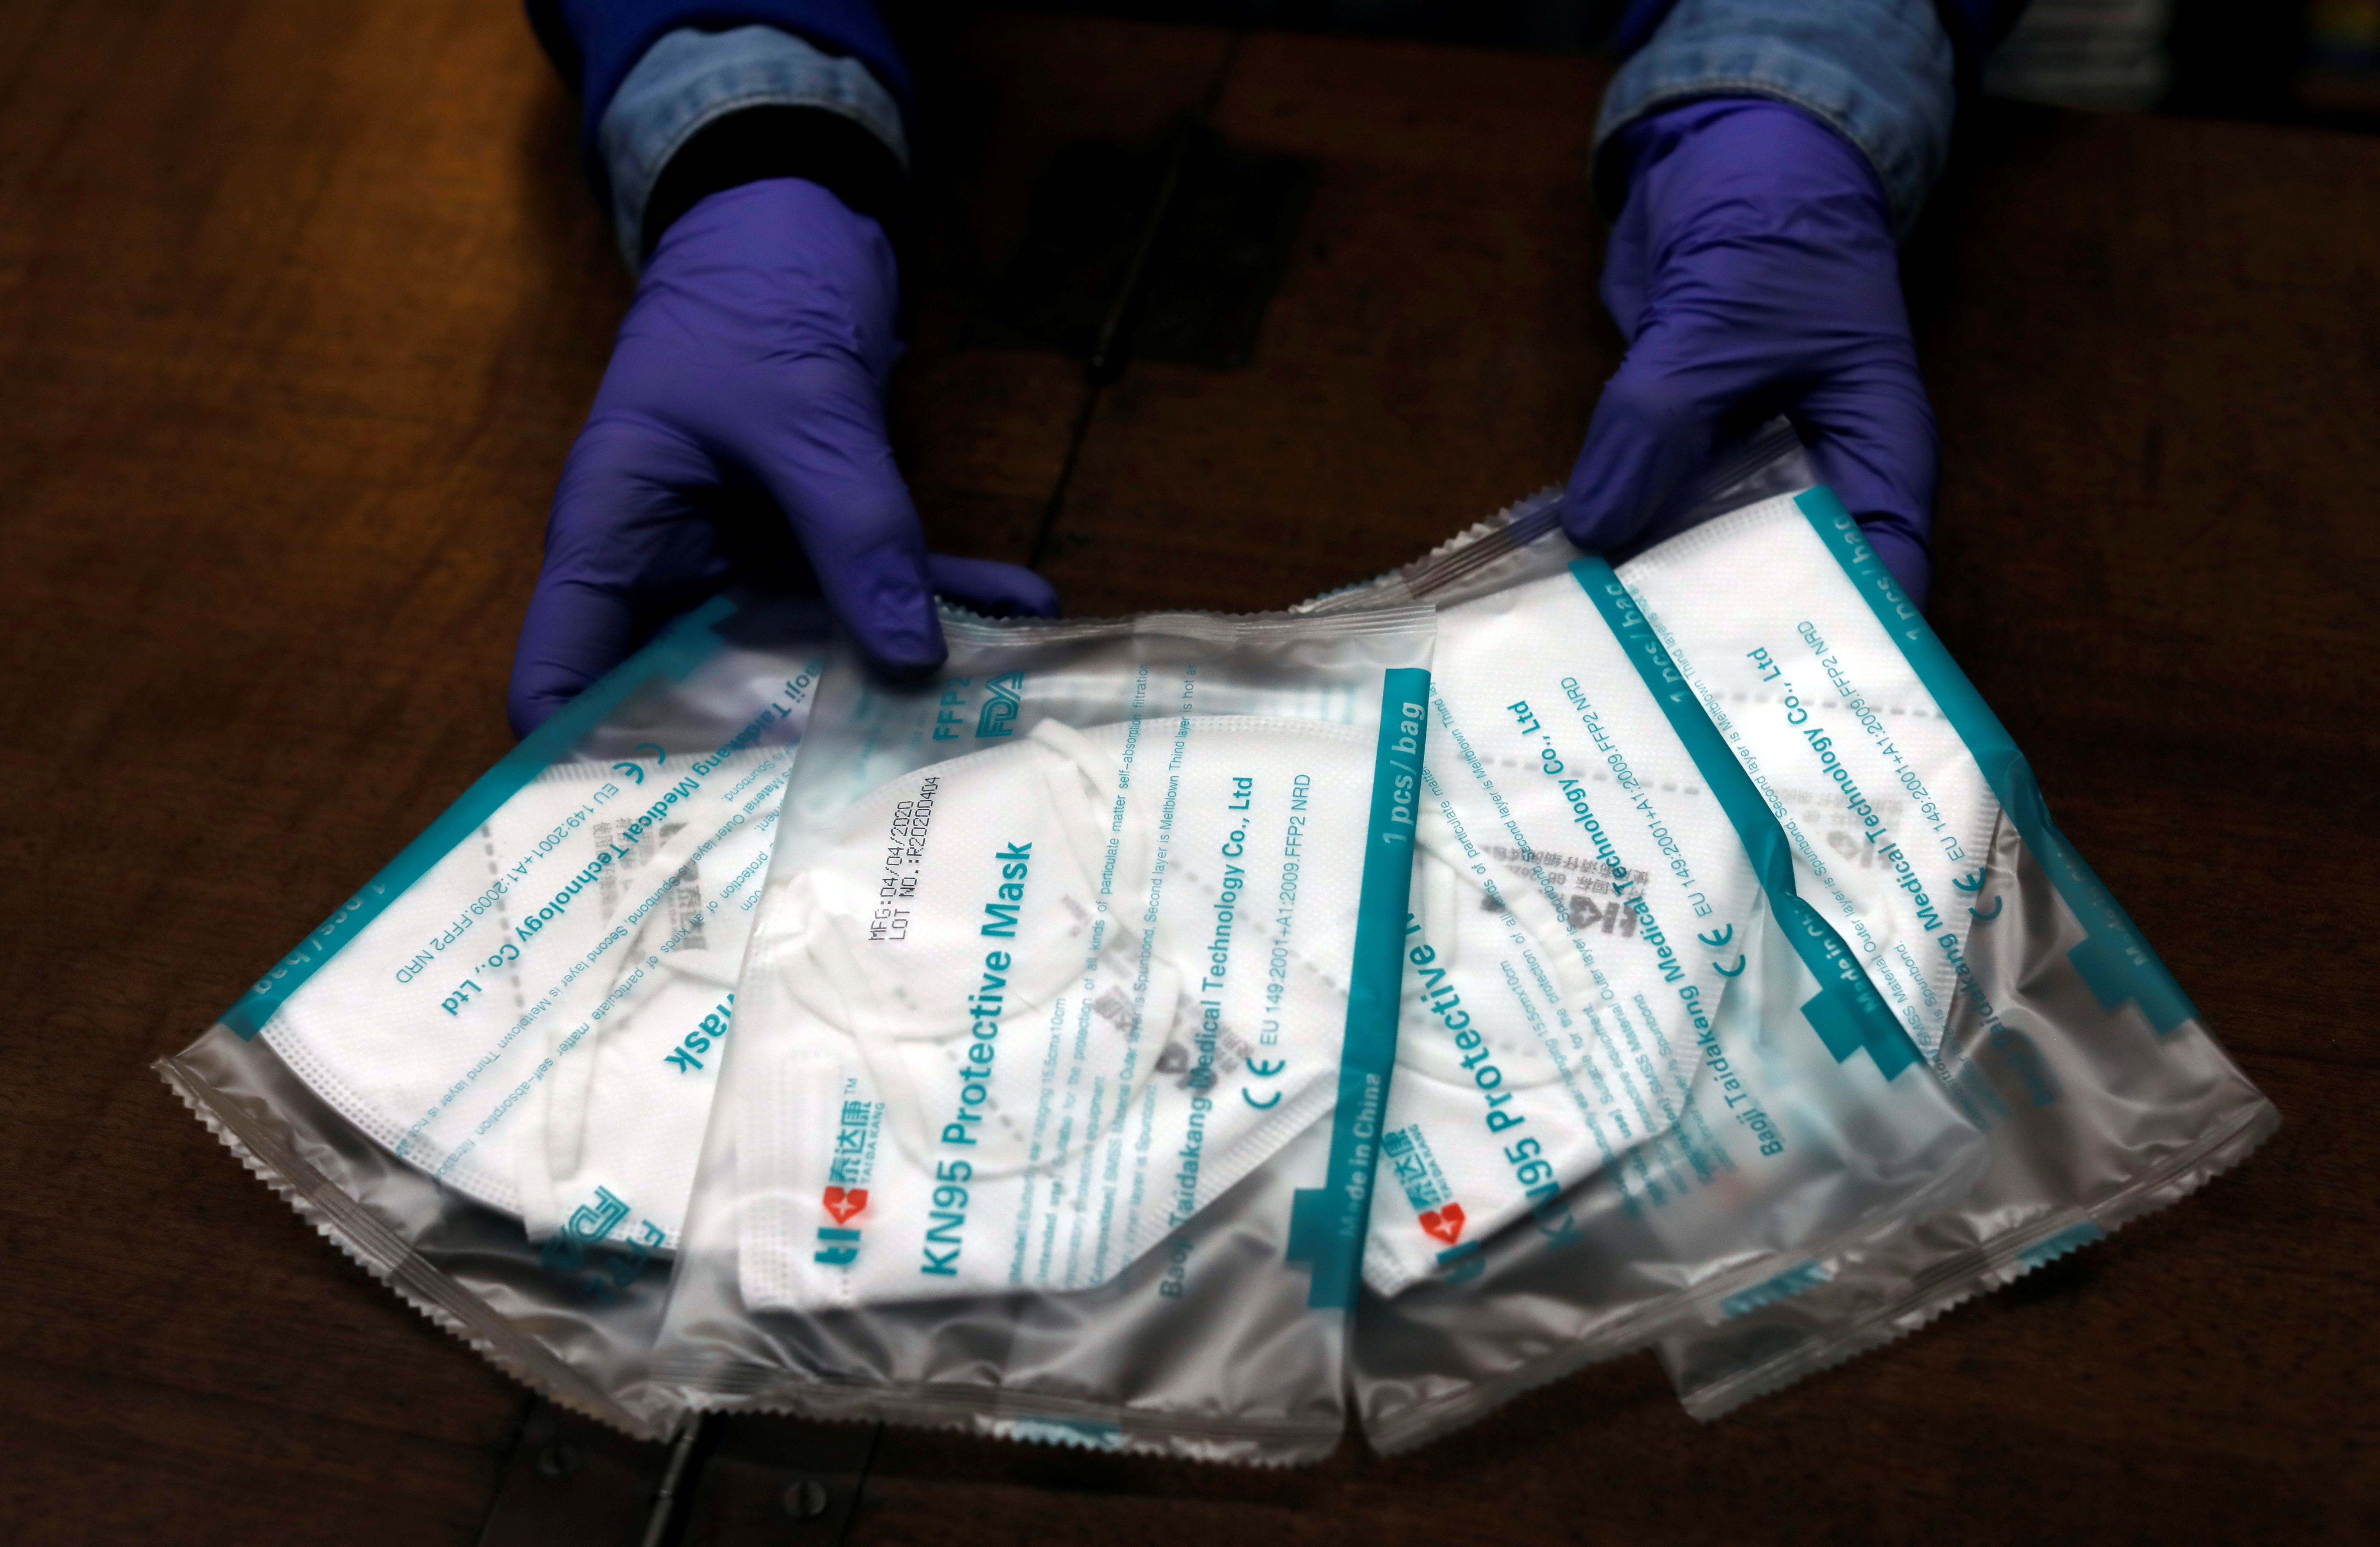 La pandemia por COVID-19 ha hecho que las personas busquen la mejor forma de protejerse. REUTERS/Jon Nazca